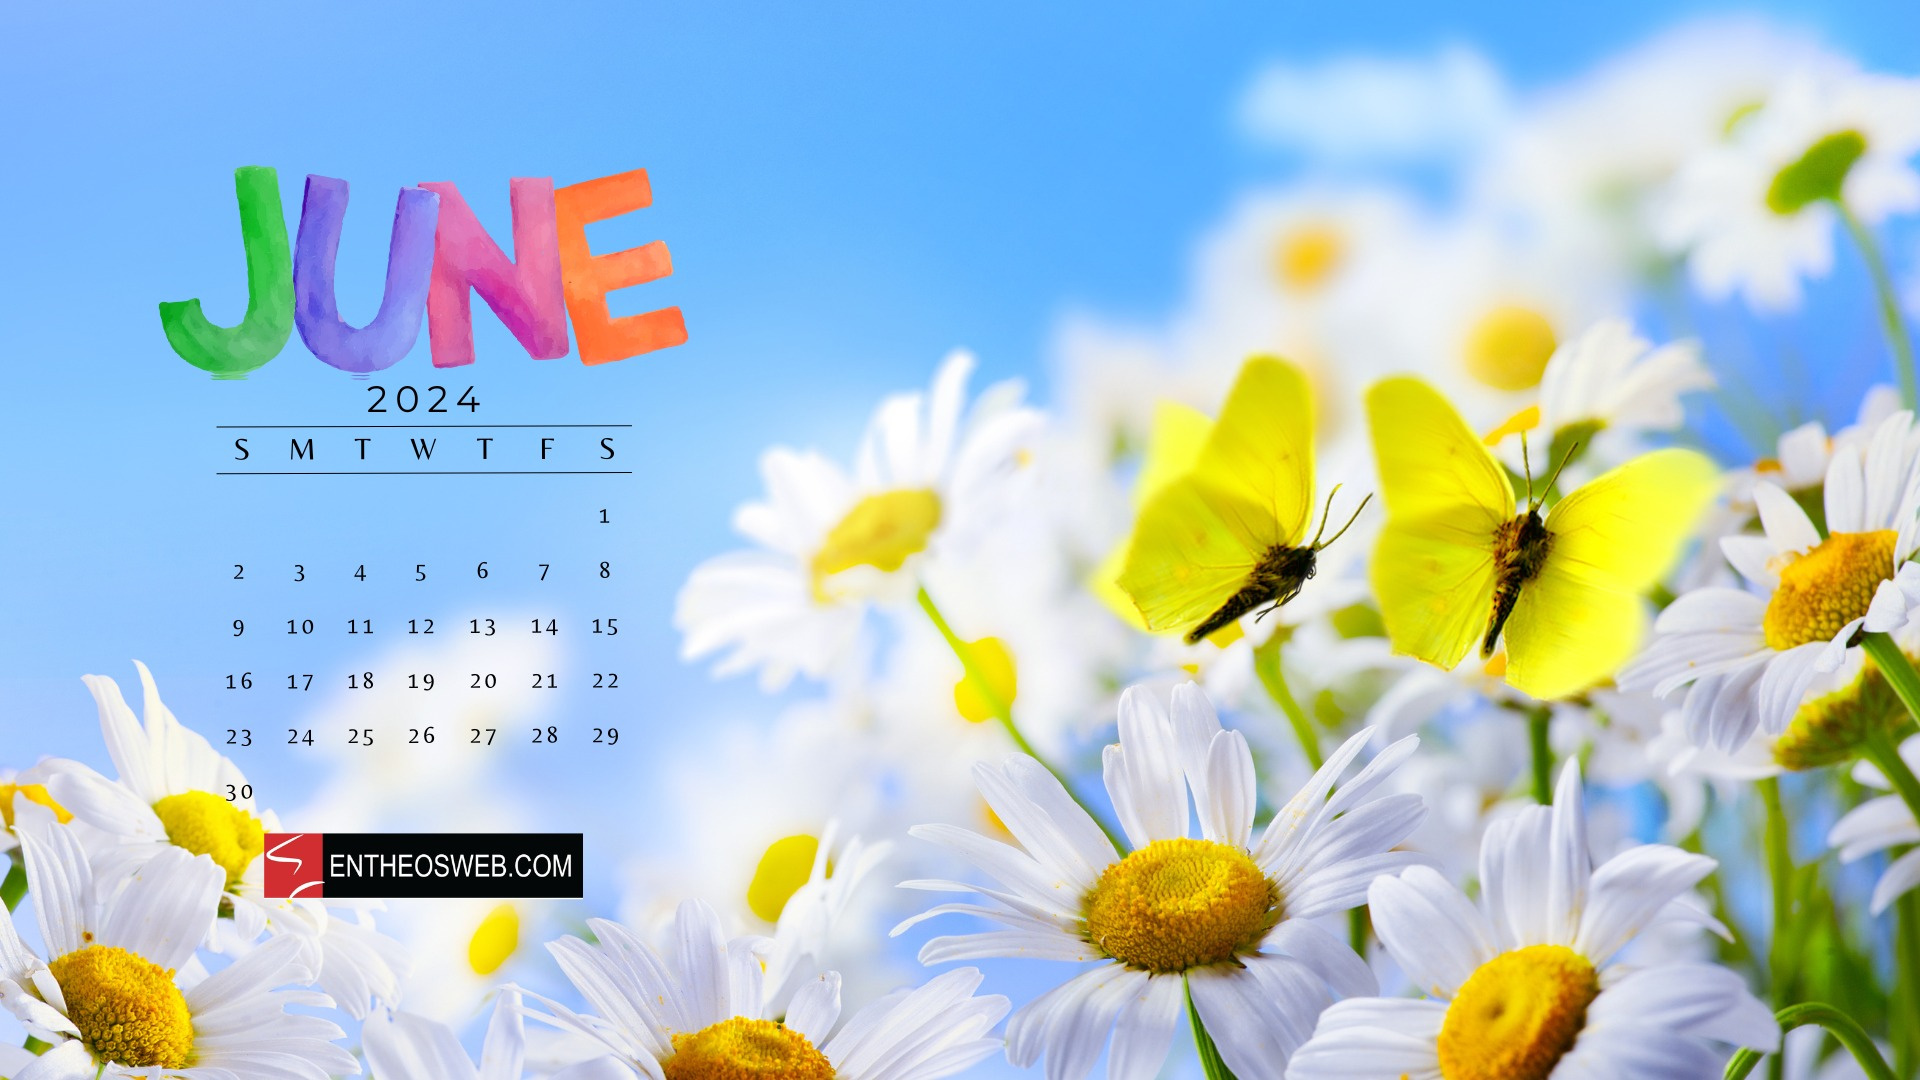 June 2024 Desktop Wallpaper Calendars | Entheosweb within June Calendar Desktop Wallpaper 2024